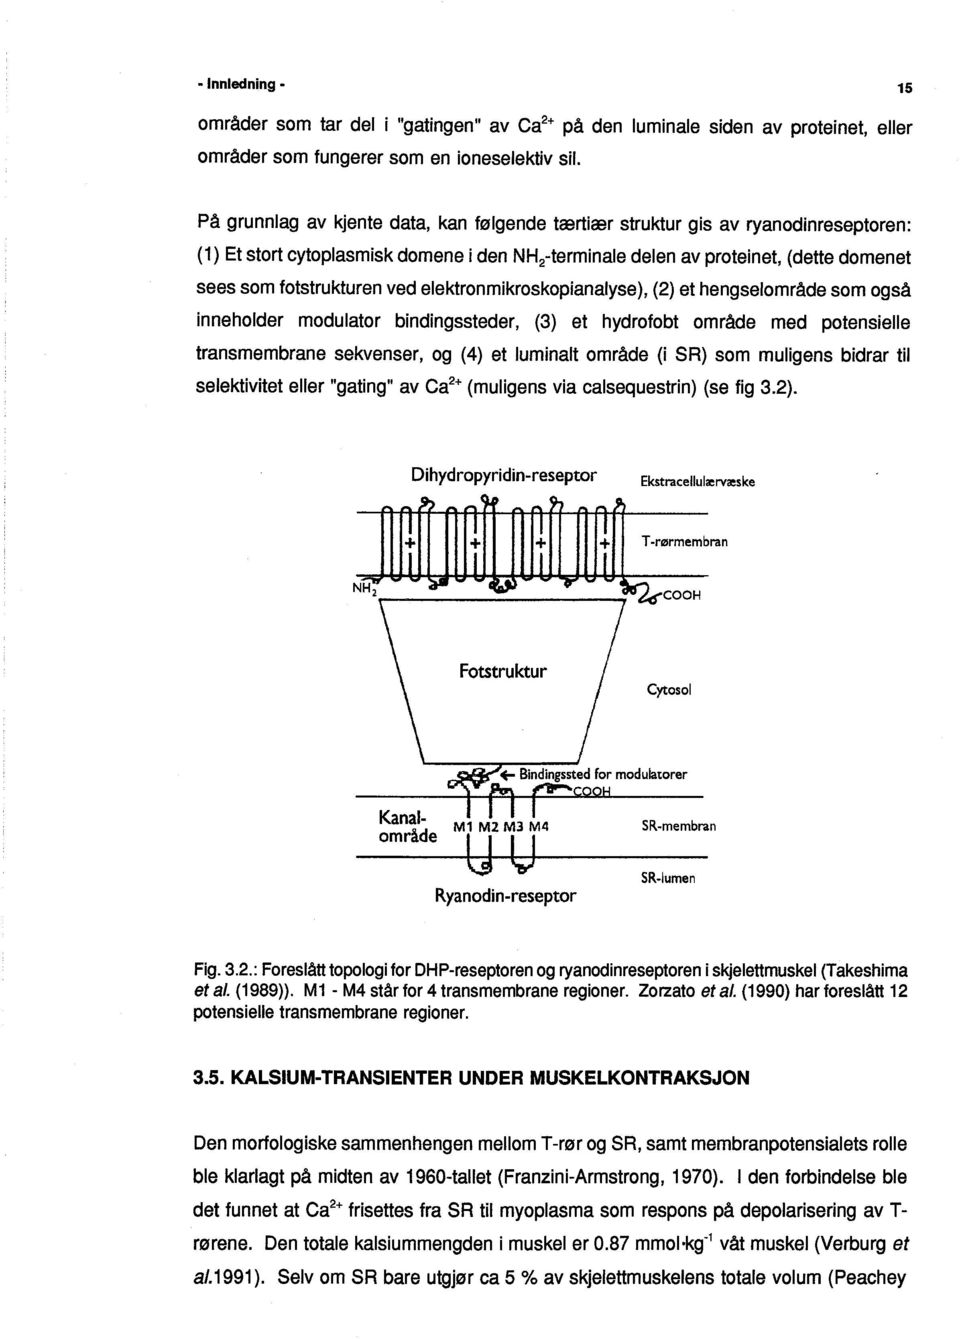 elektronmikroskopianalyse), (2) et hengselområde som også inneholder modulator bindingssteder, (3) et hydrofobt område med potensielle transmembrane sekvenser, og (4) et luminalt område (i SR) som